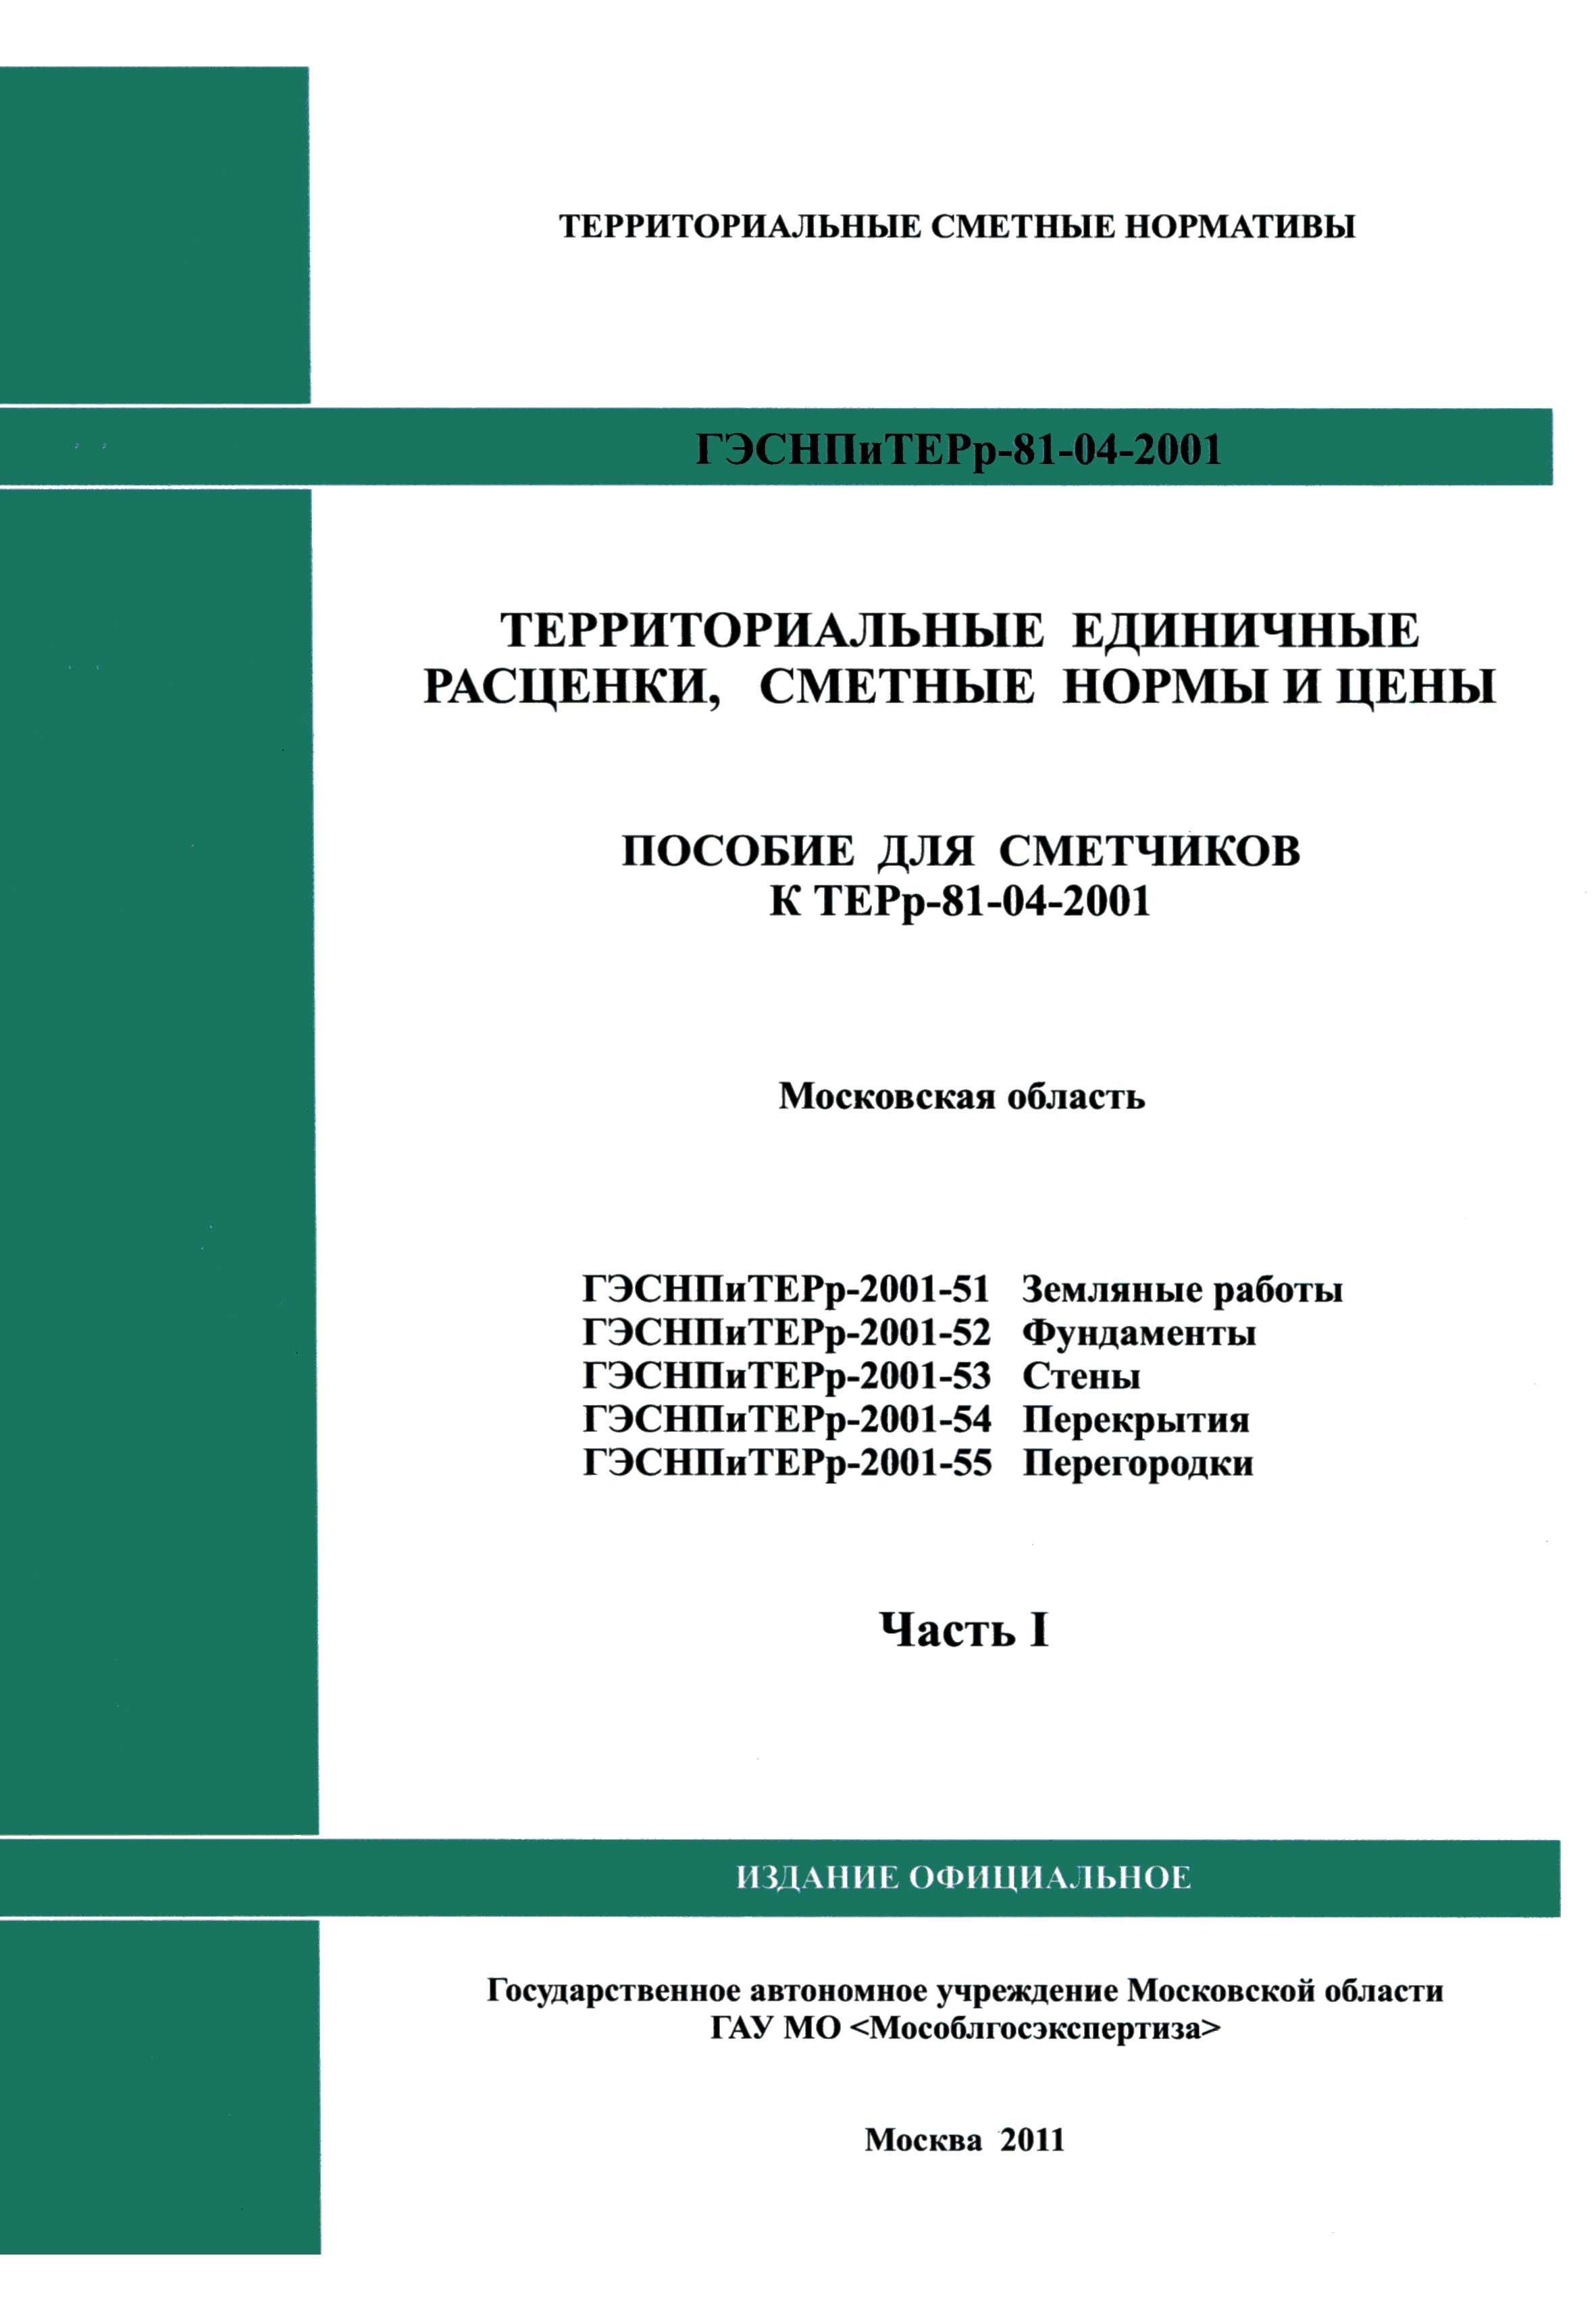 ГЭСНПиТЕРр 2001-52 Московской области